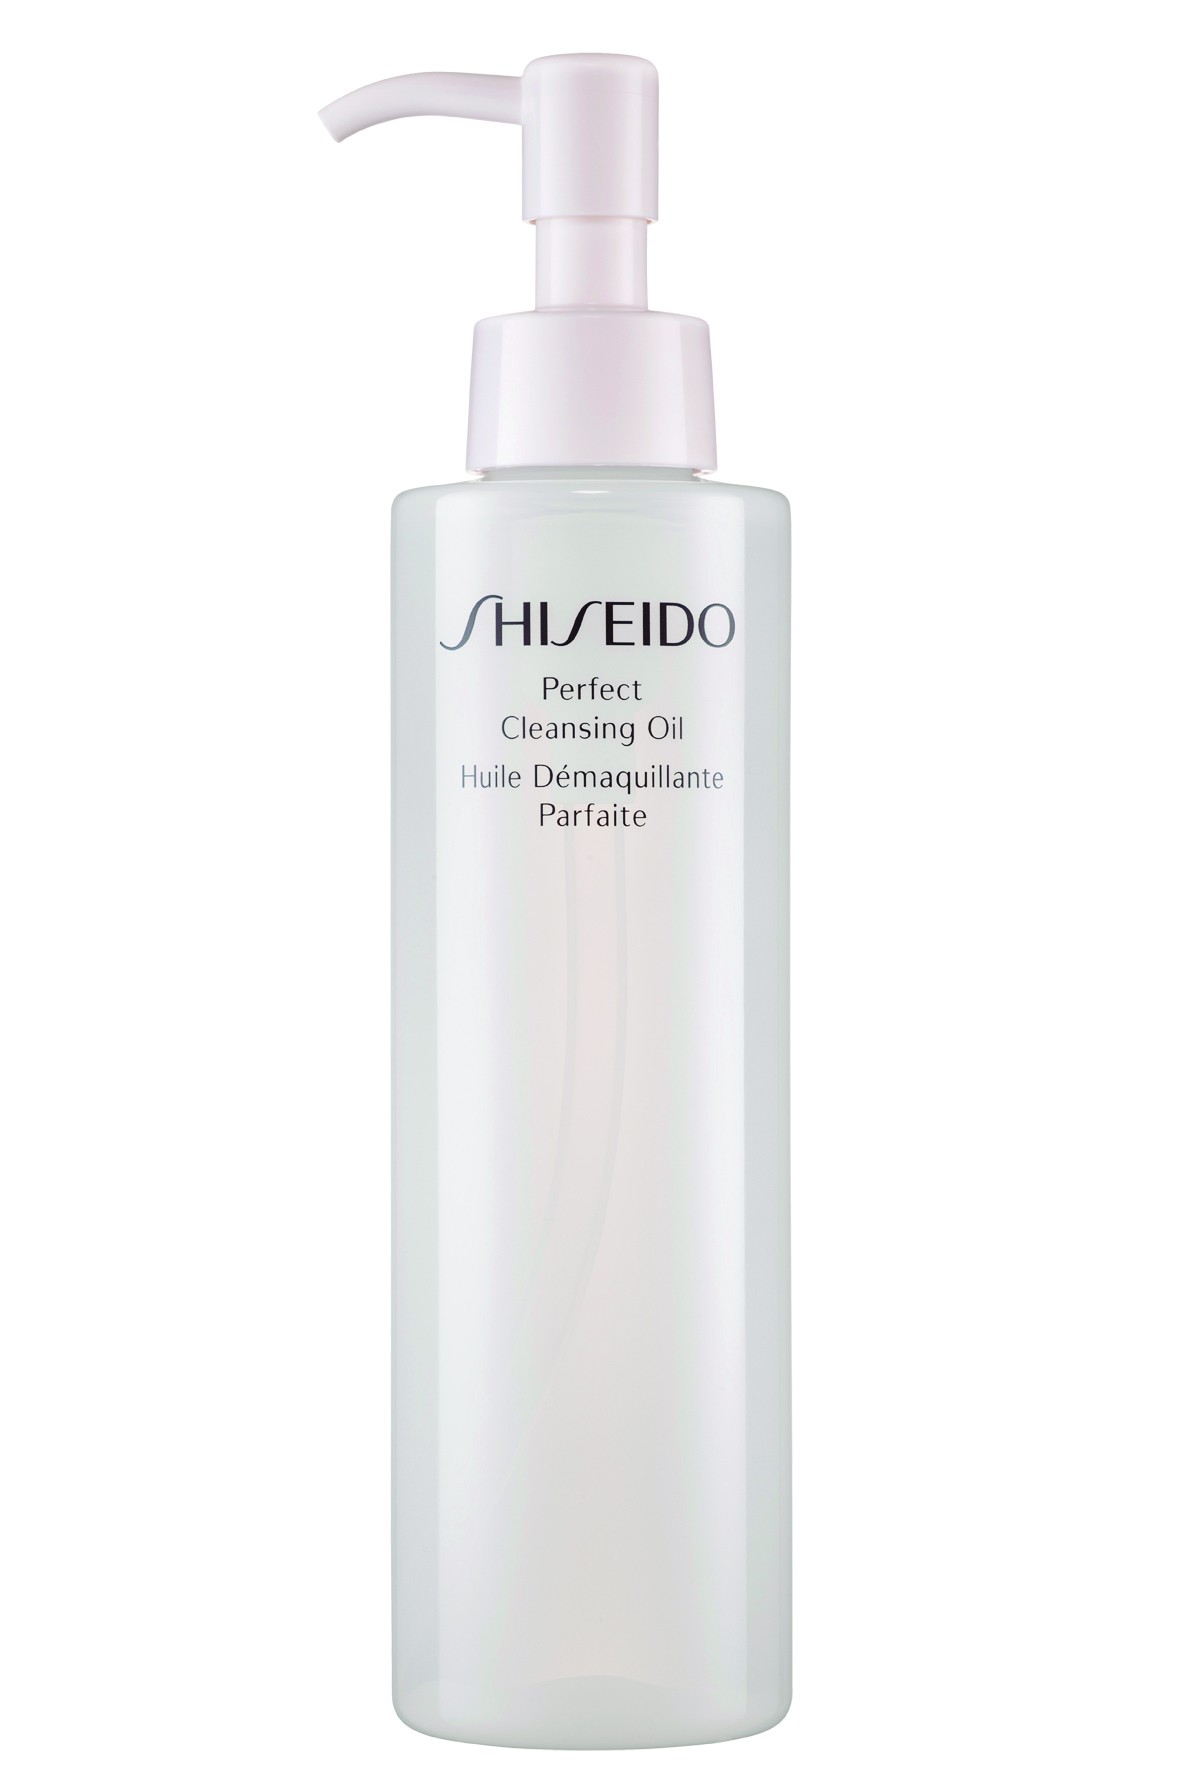 Shiseido (Foto: divulgação)